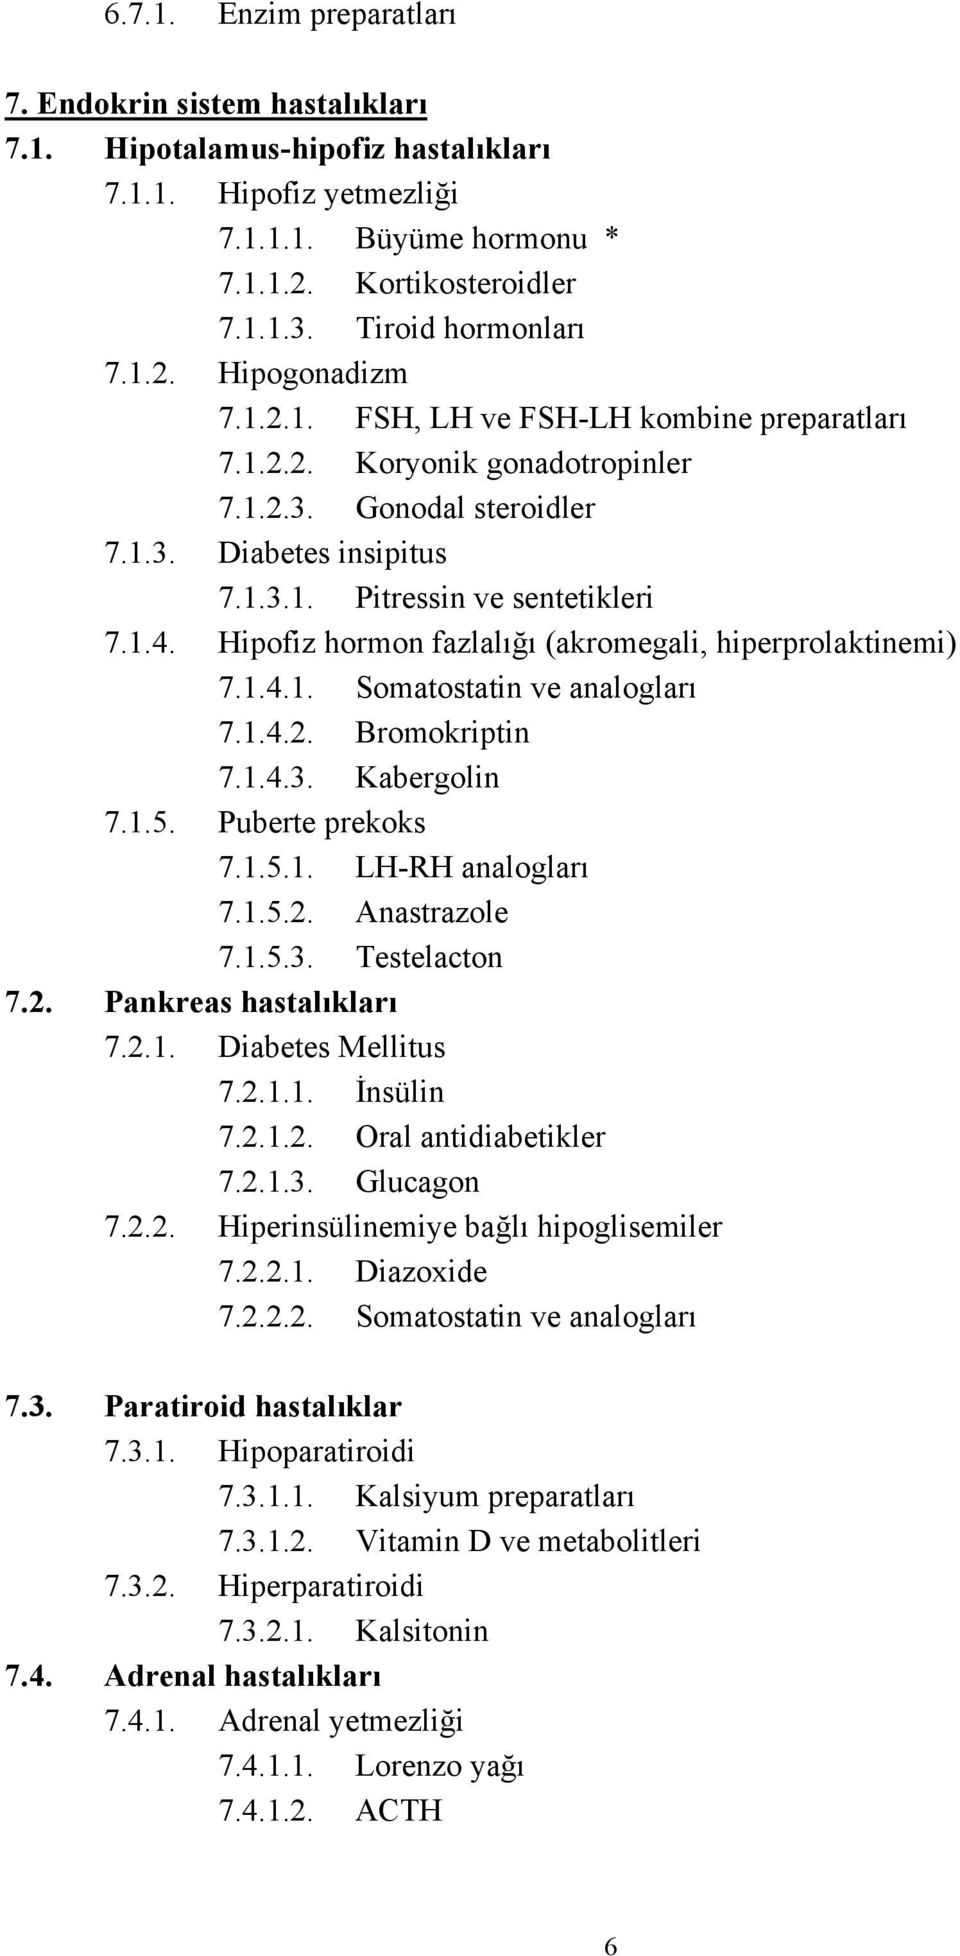 1.4. Hipofiz hormon fazlalığı (akromegali, hiperprolaktinemi) 7.1.4.1. Somatostatin ve analogları 7.1.4.2. Bromokriptin 7.1.4.3. Kabergolin 7.1.5. Puberte prekoks 7.1.5.1. LH-RH analogları 7.1.5.2. Anastrazole 7.